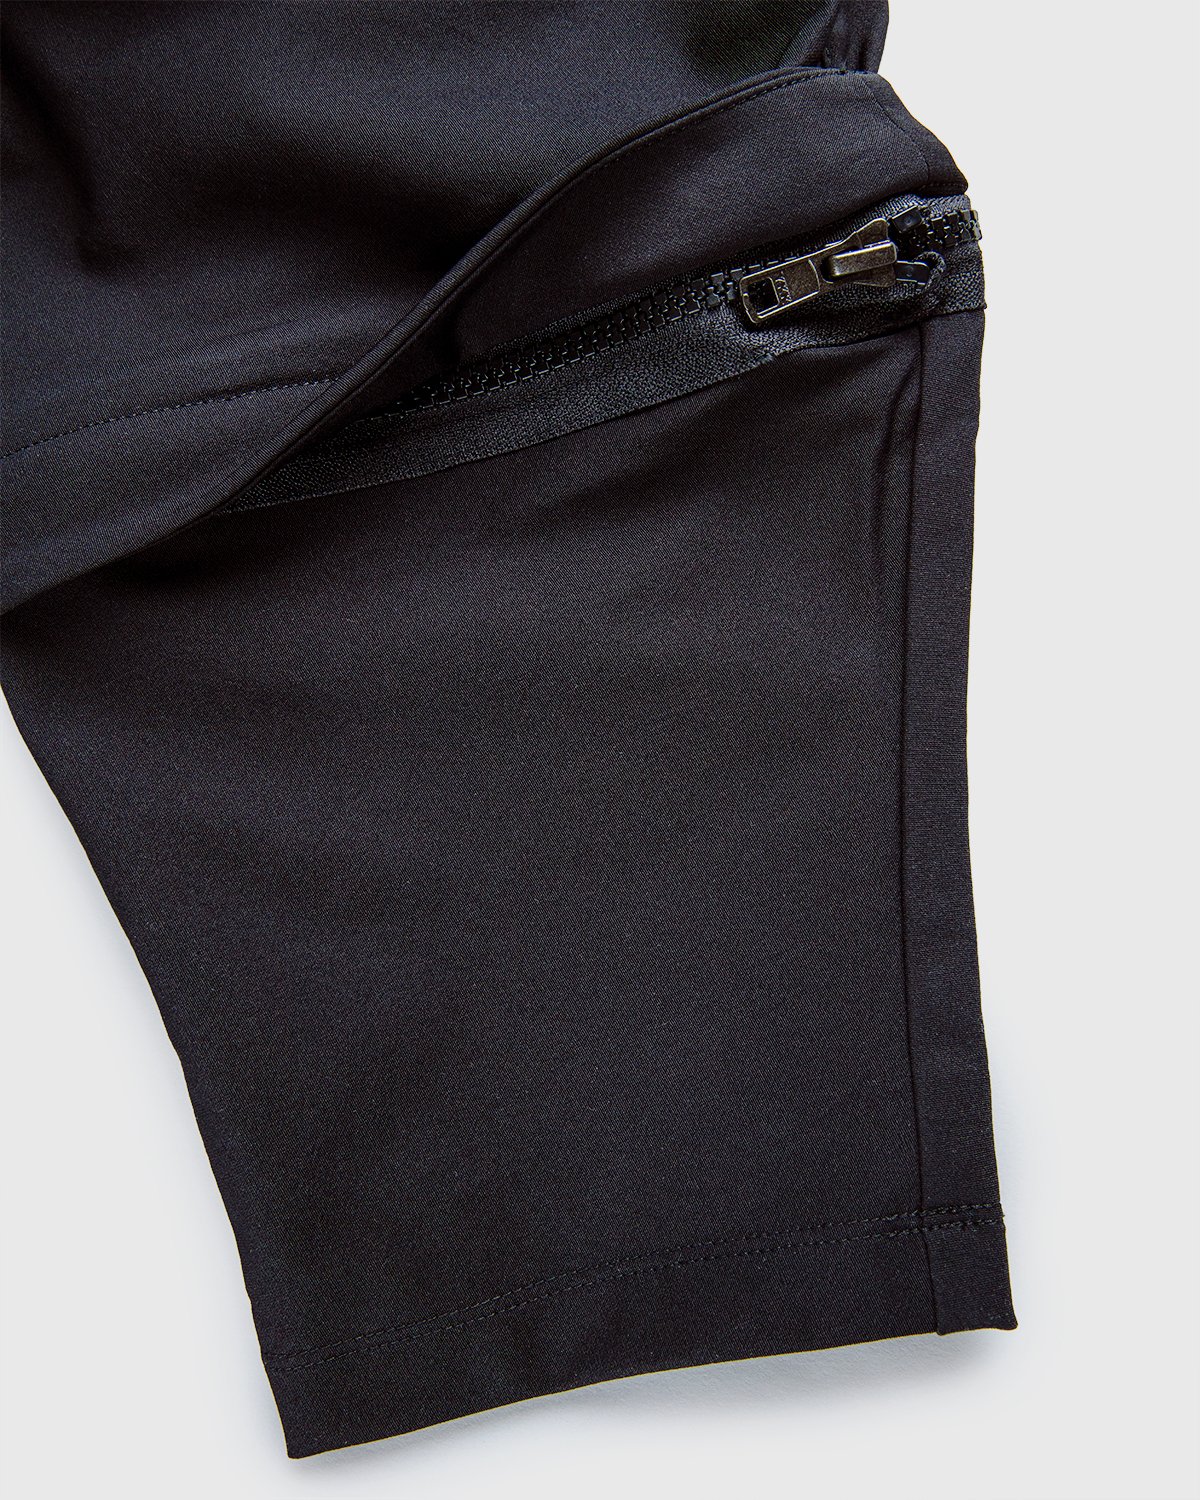 ACRONYM - P30A-DS Pants Black - Clothing - Black - Image 7